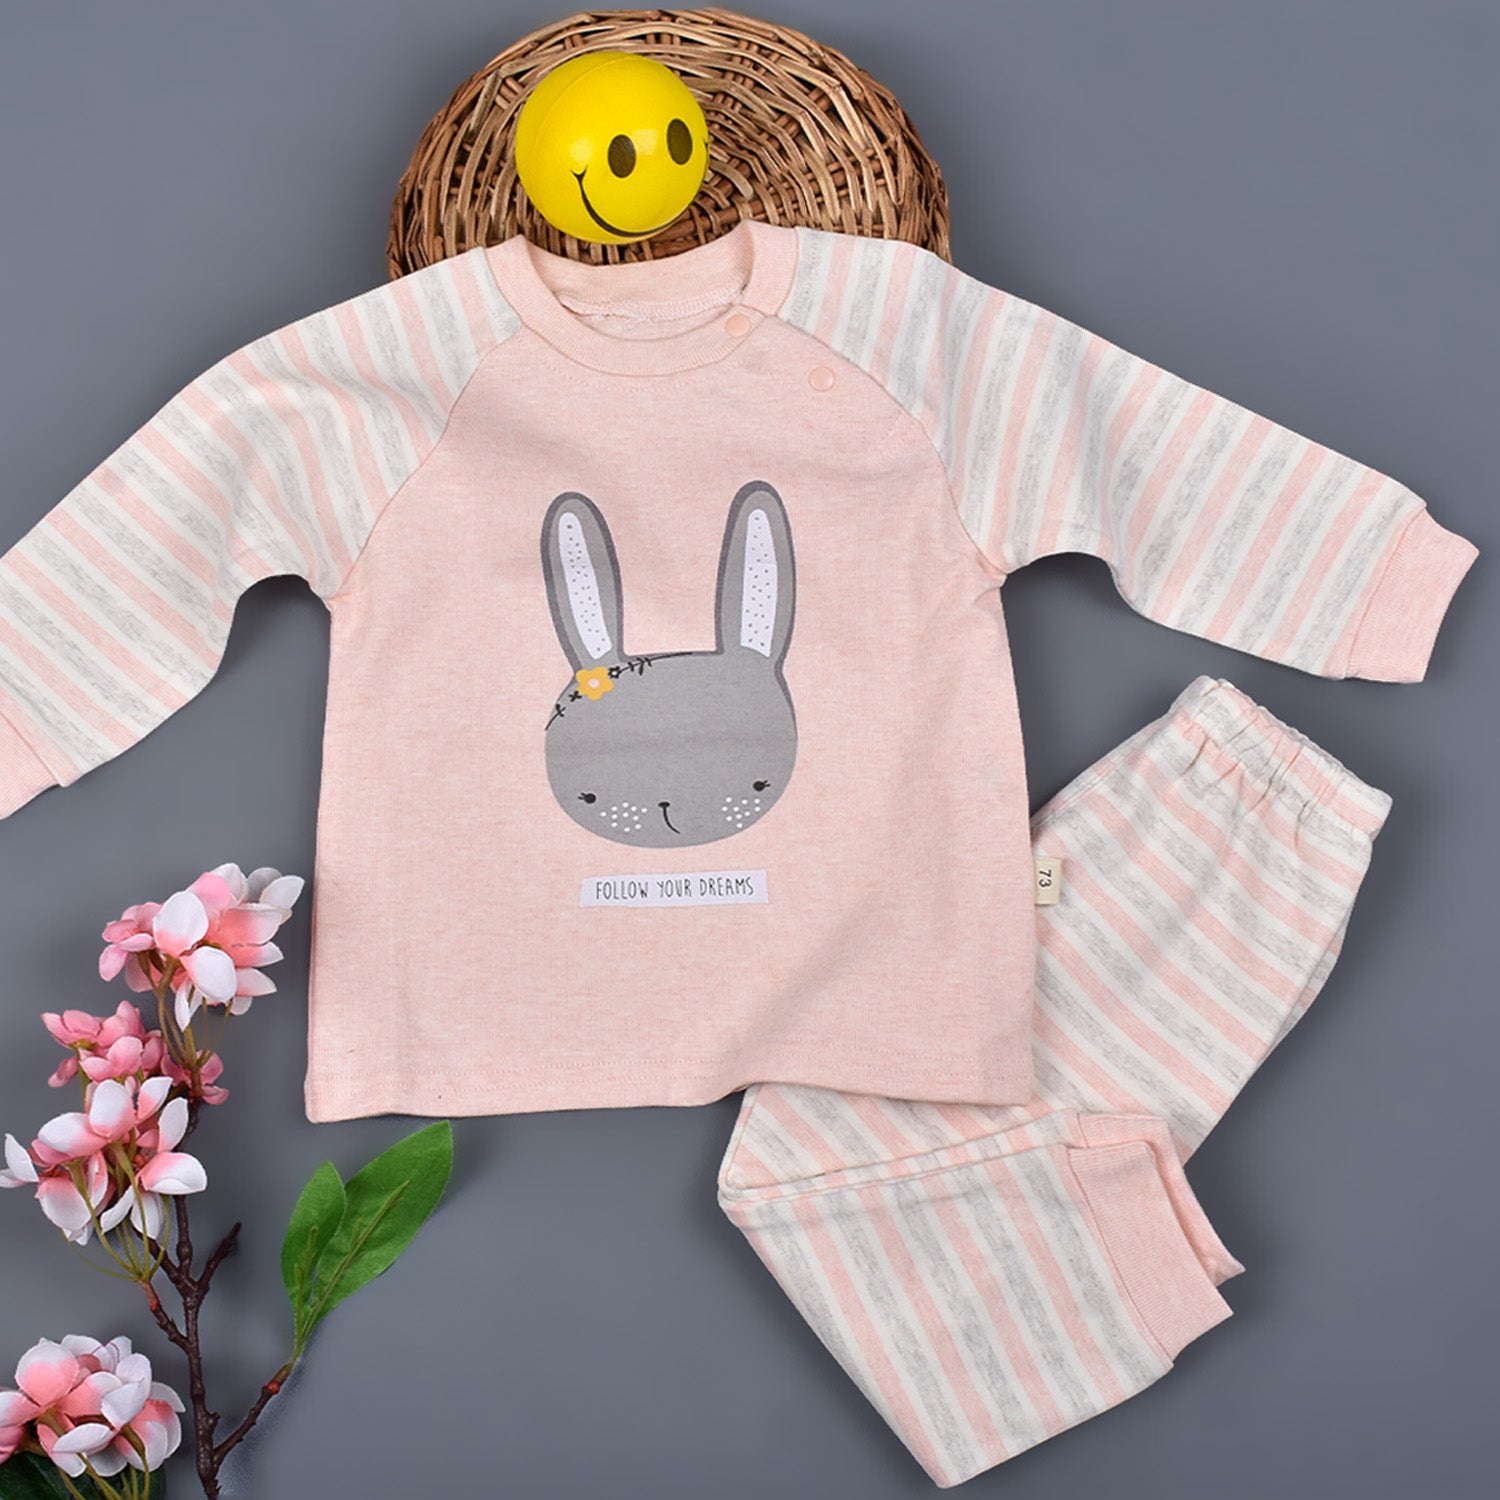 Newborn Baby's Warm Cotton Gift Set-1 Pajama and 1 Shirt- Peach